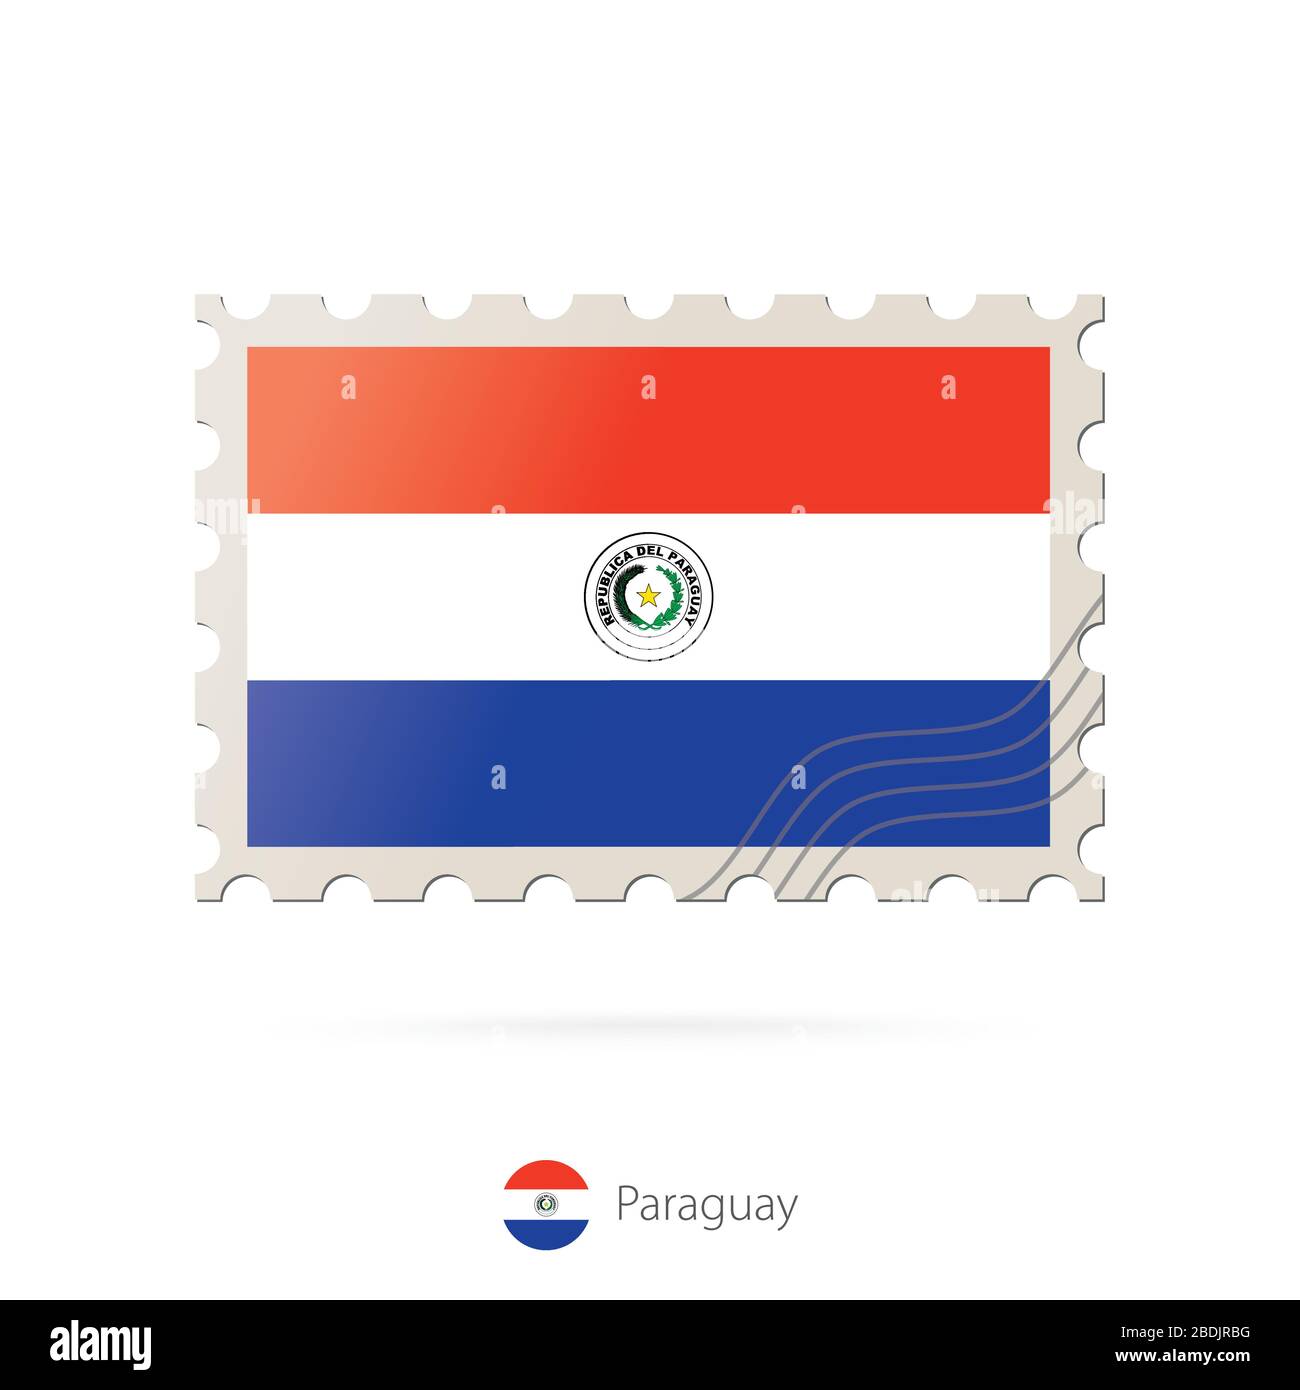 Timbre-poste avec l'image du drapeau du Paraguay. Paraguay Drapeau Postage sur fond blanc avec ombre. Illustration vectorielle. Illustration de Vecteur